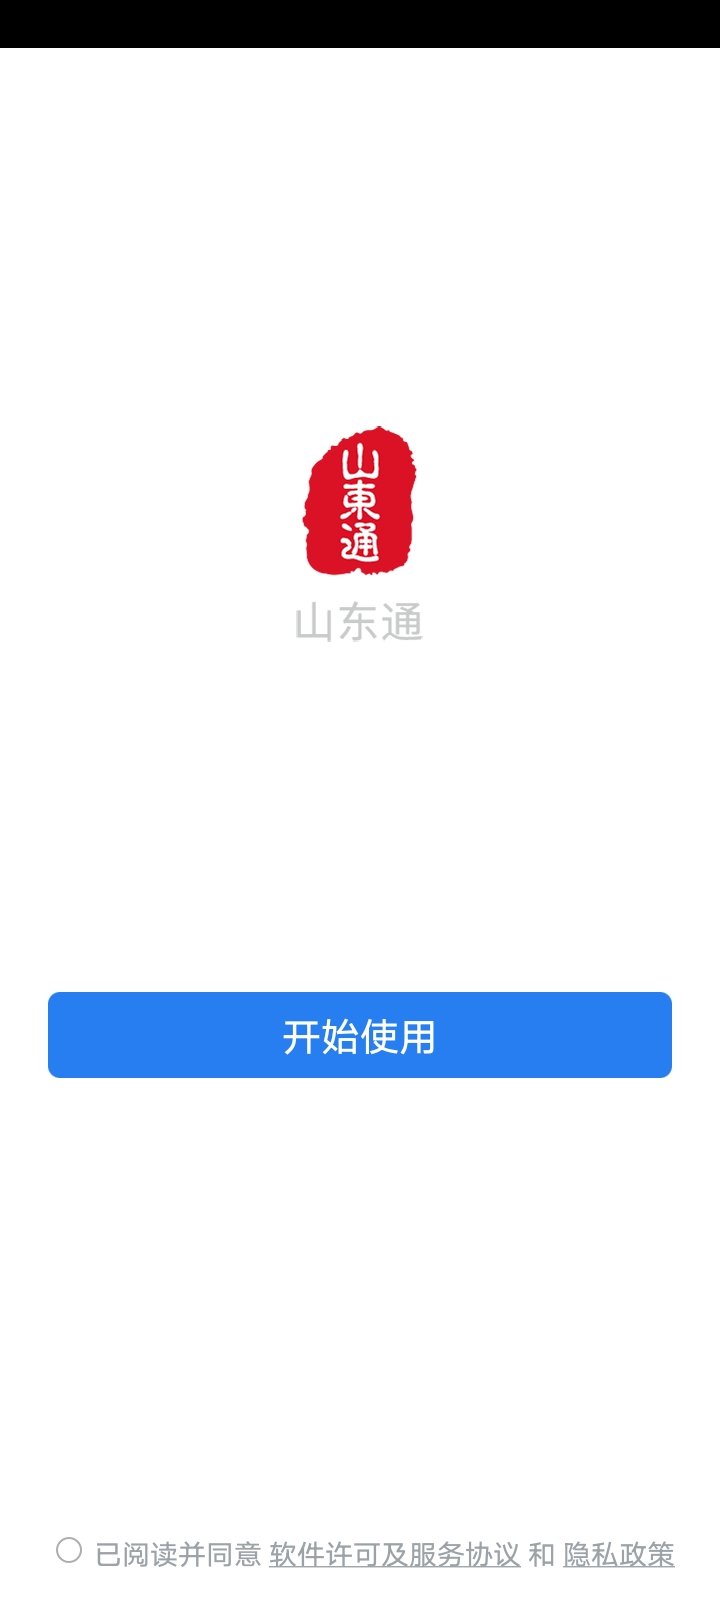 山东通app(1)